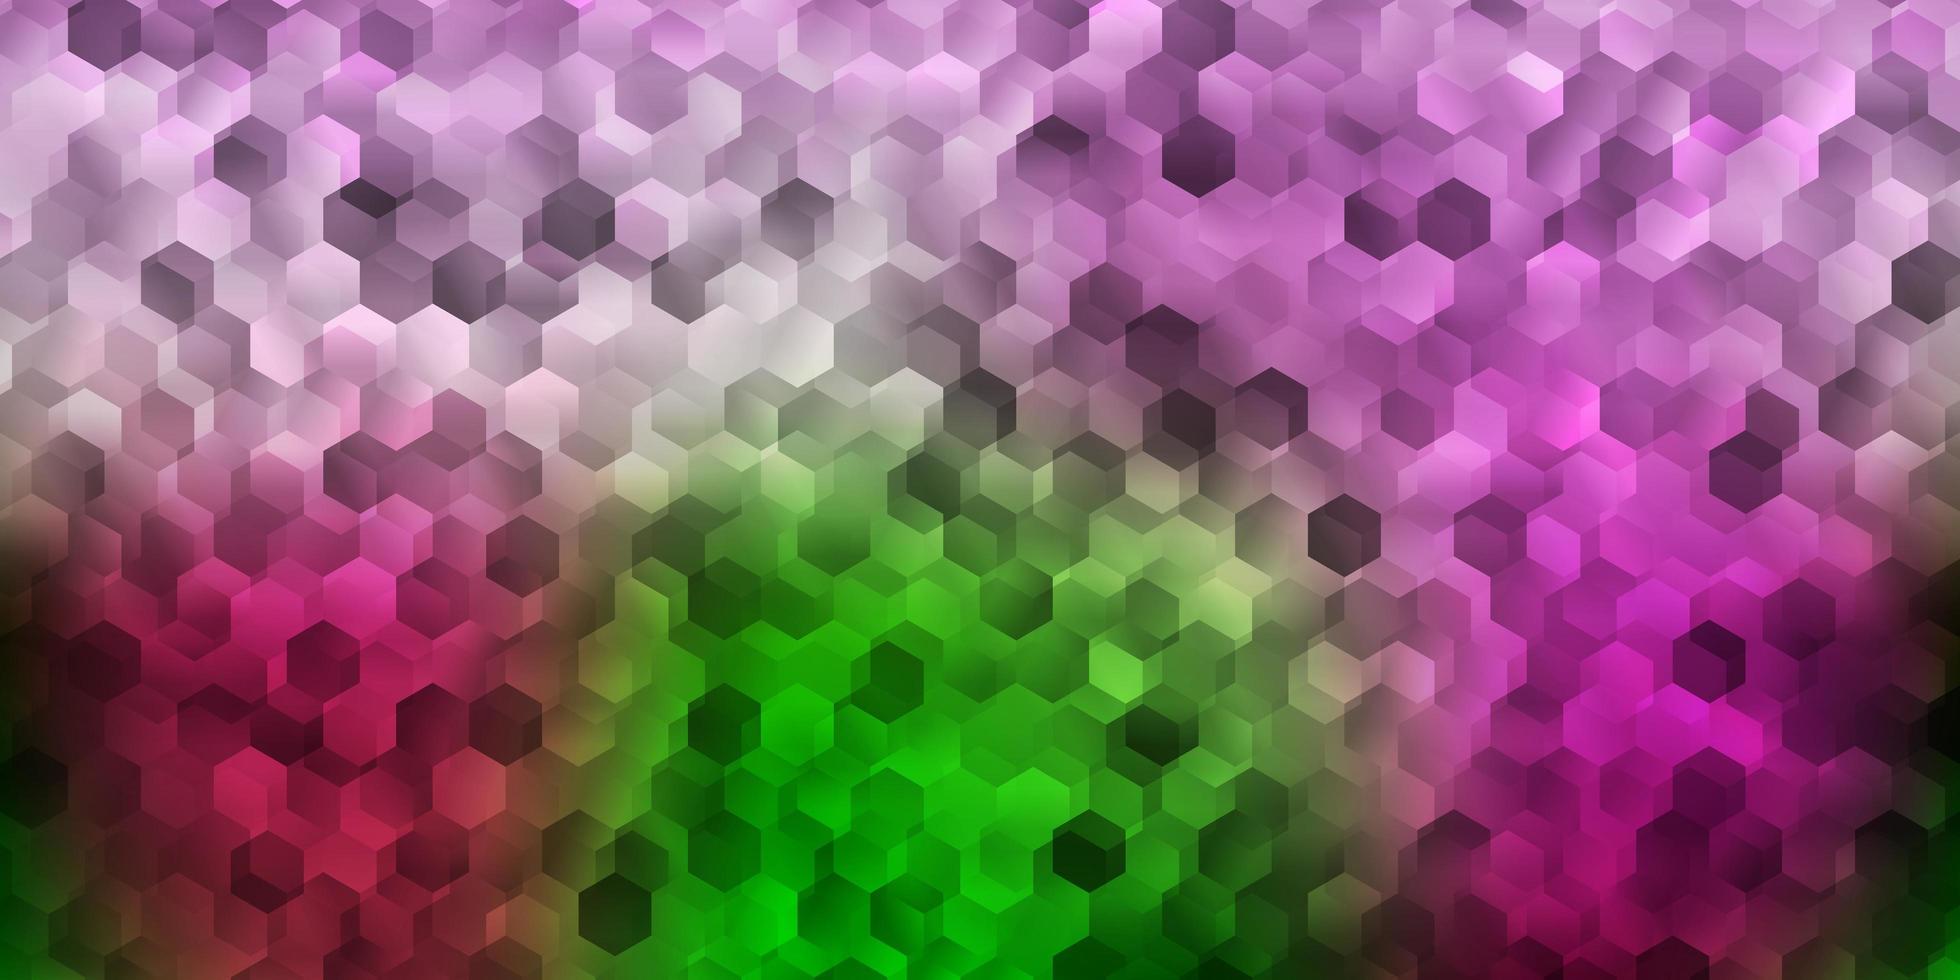 capa de vetor rosa claro verde com hexágonos simples.